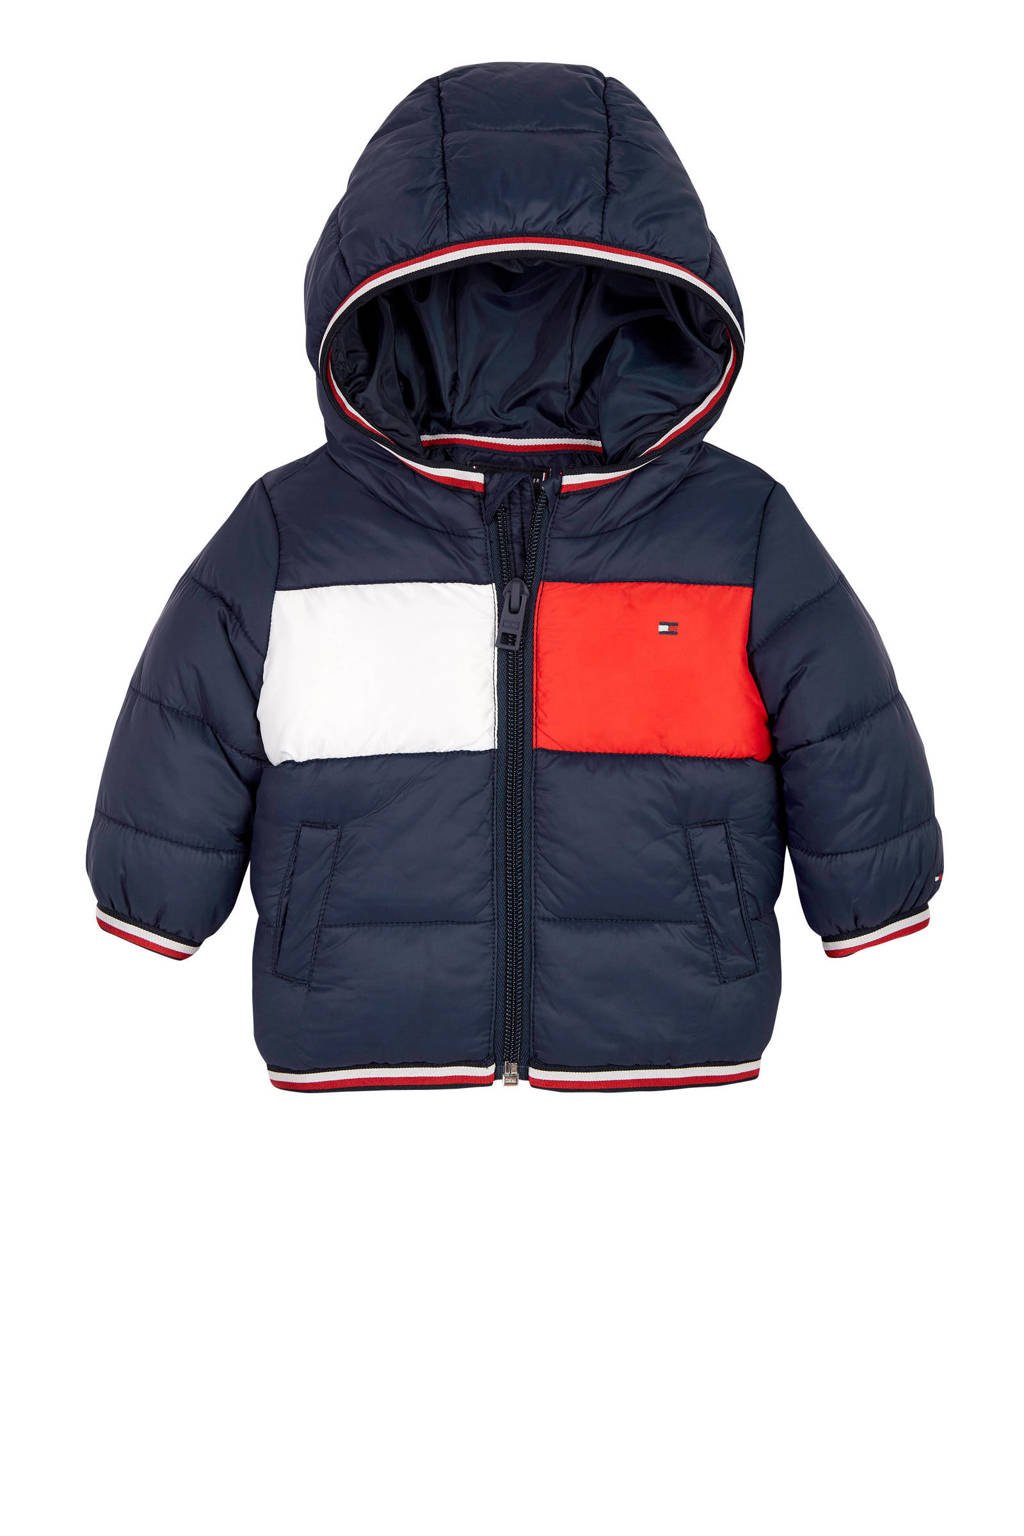 veiling wervelkolom landinwaarts Tommy Hilfiger baby gewatteerde winterjas donkerblauw/rood/wit | wehkamp